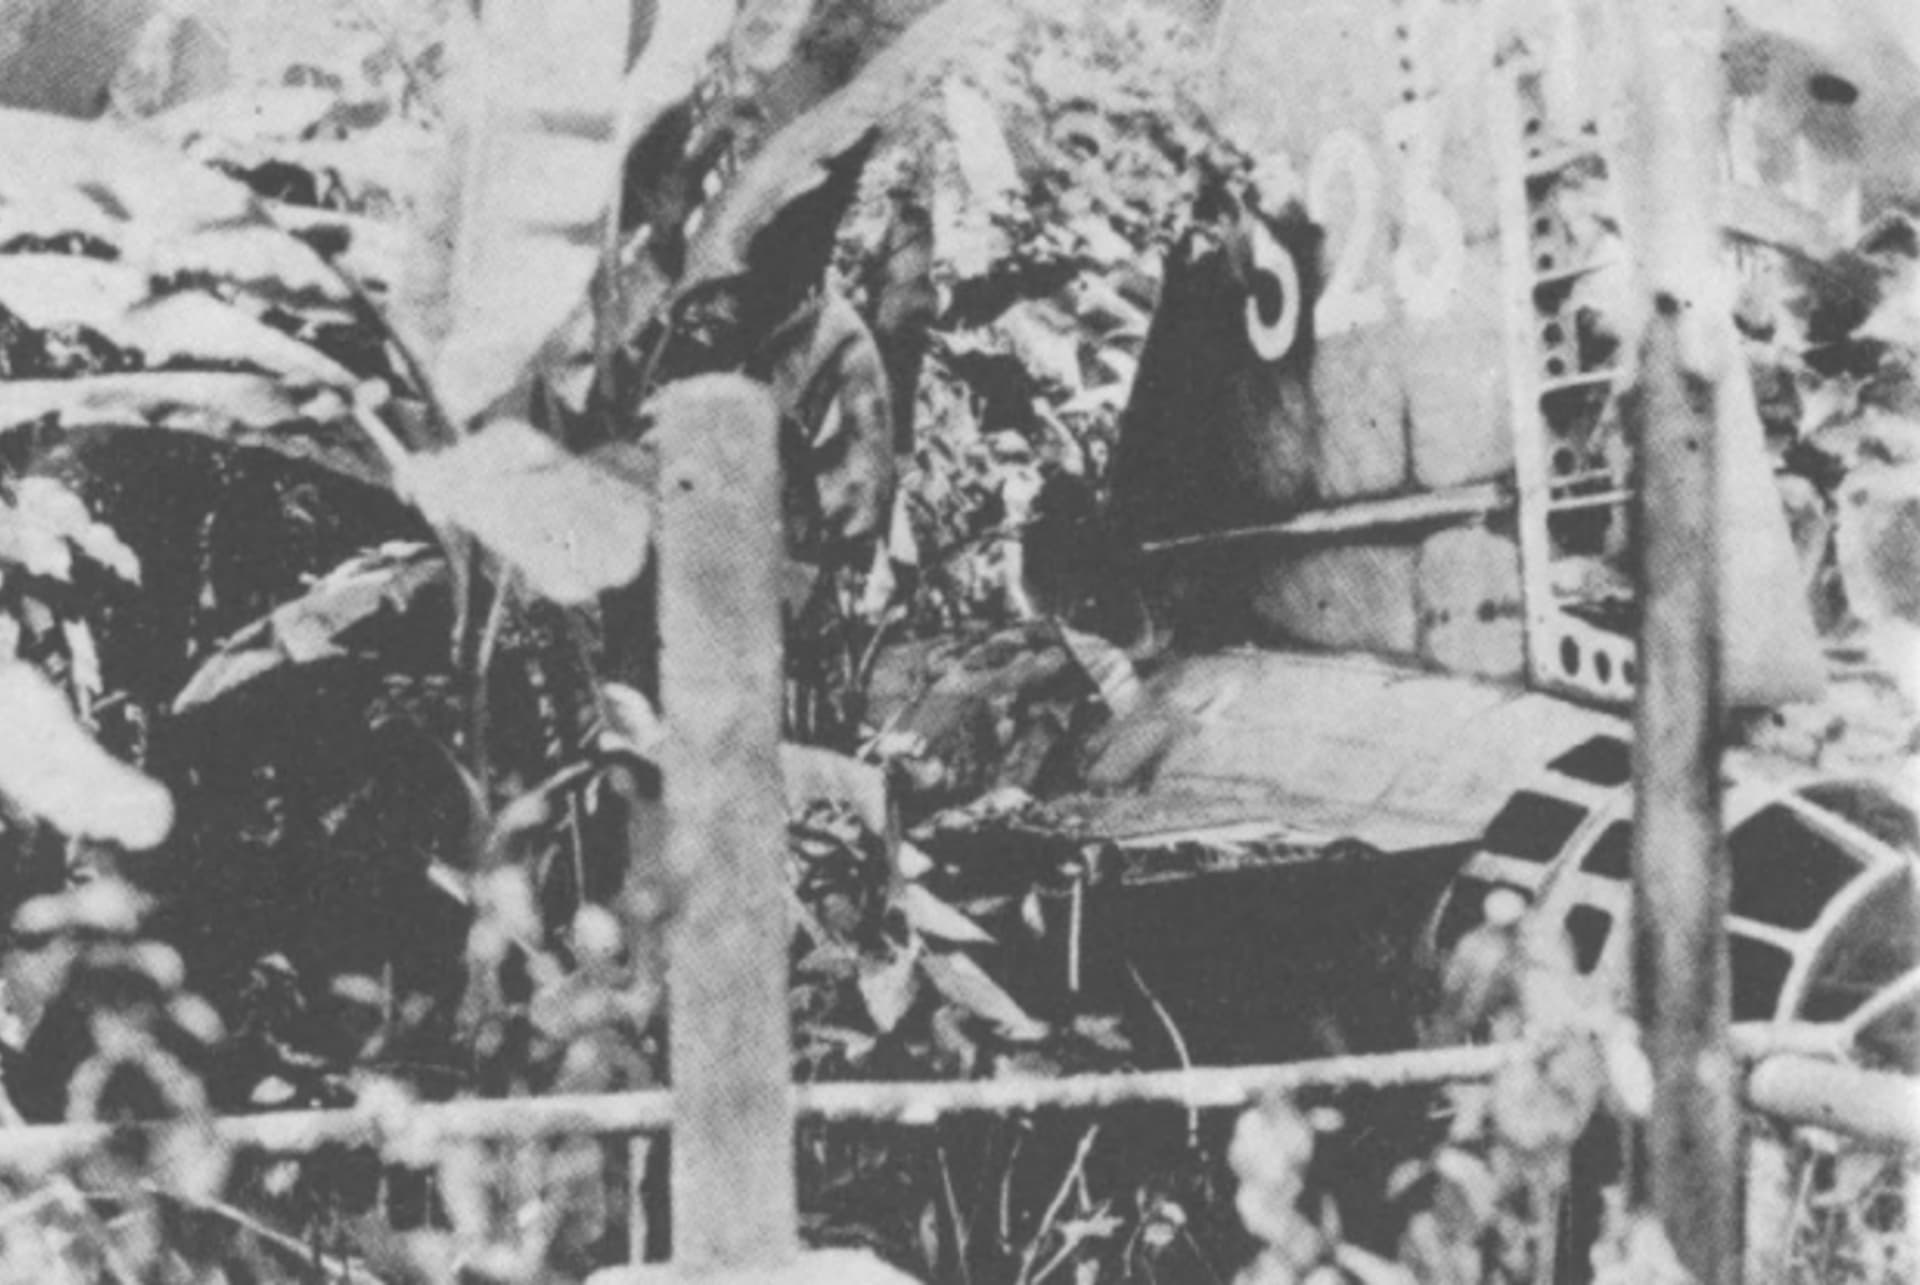 Jamamotovo letadlo leží sestřelené v džungli